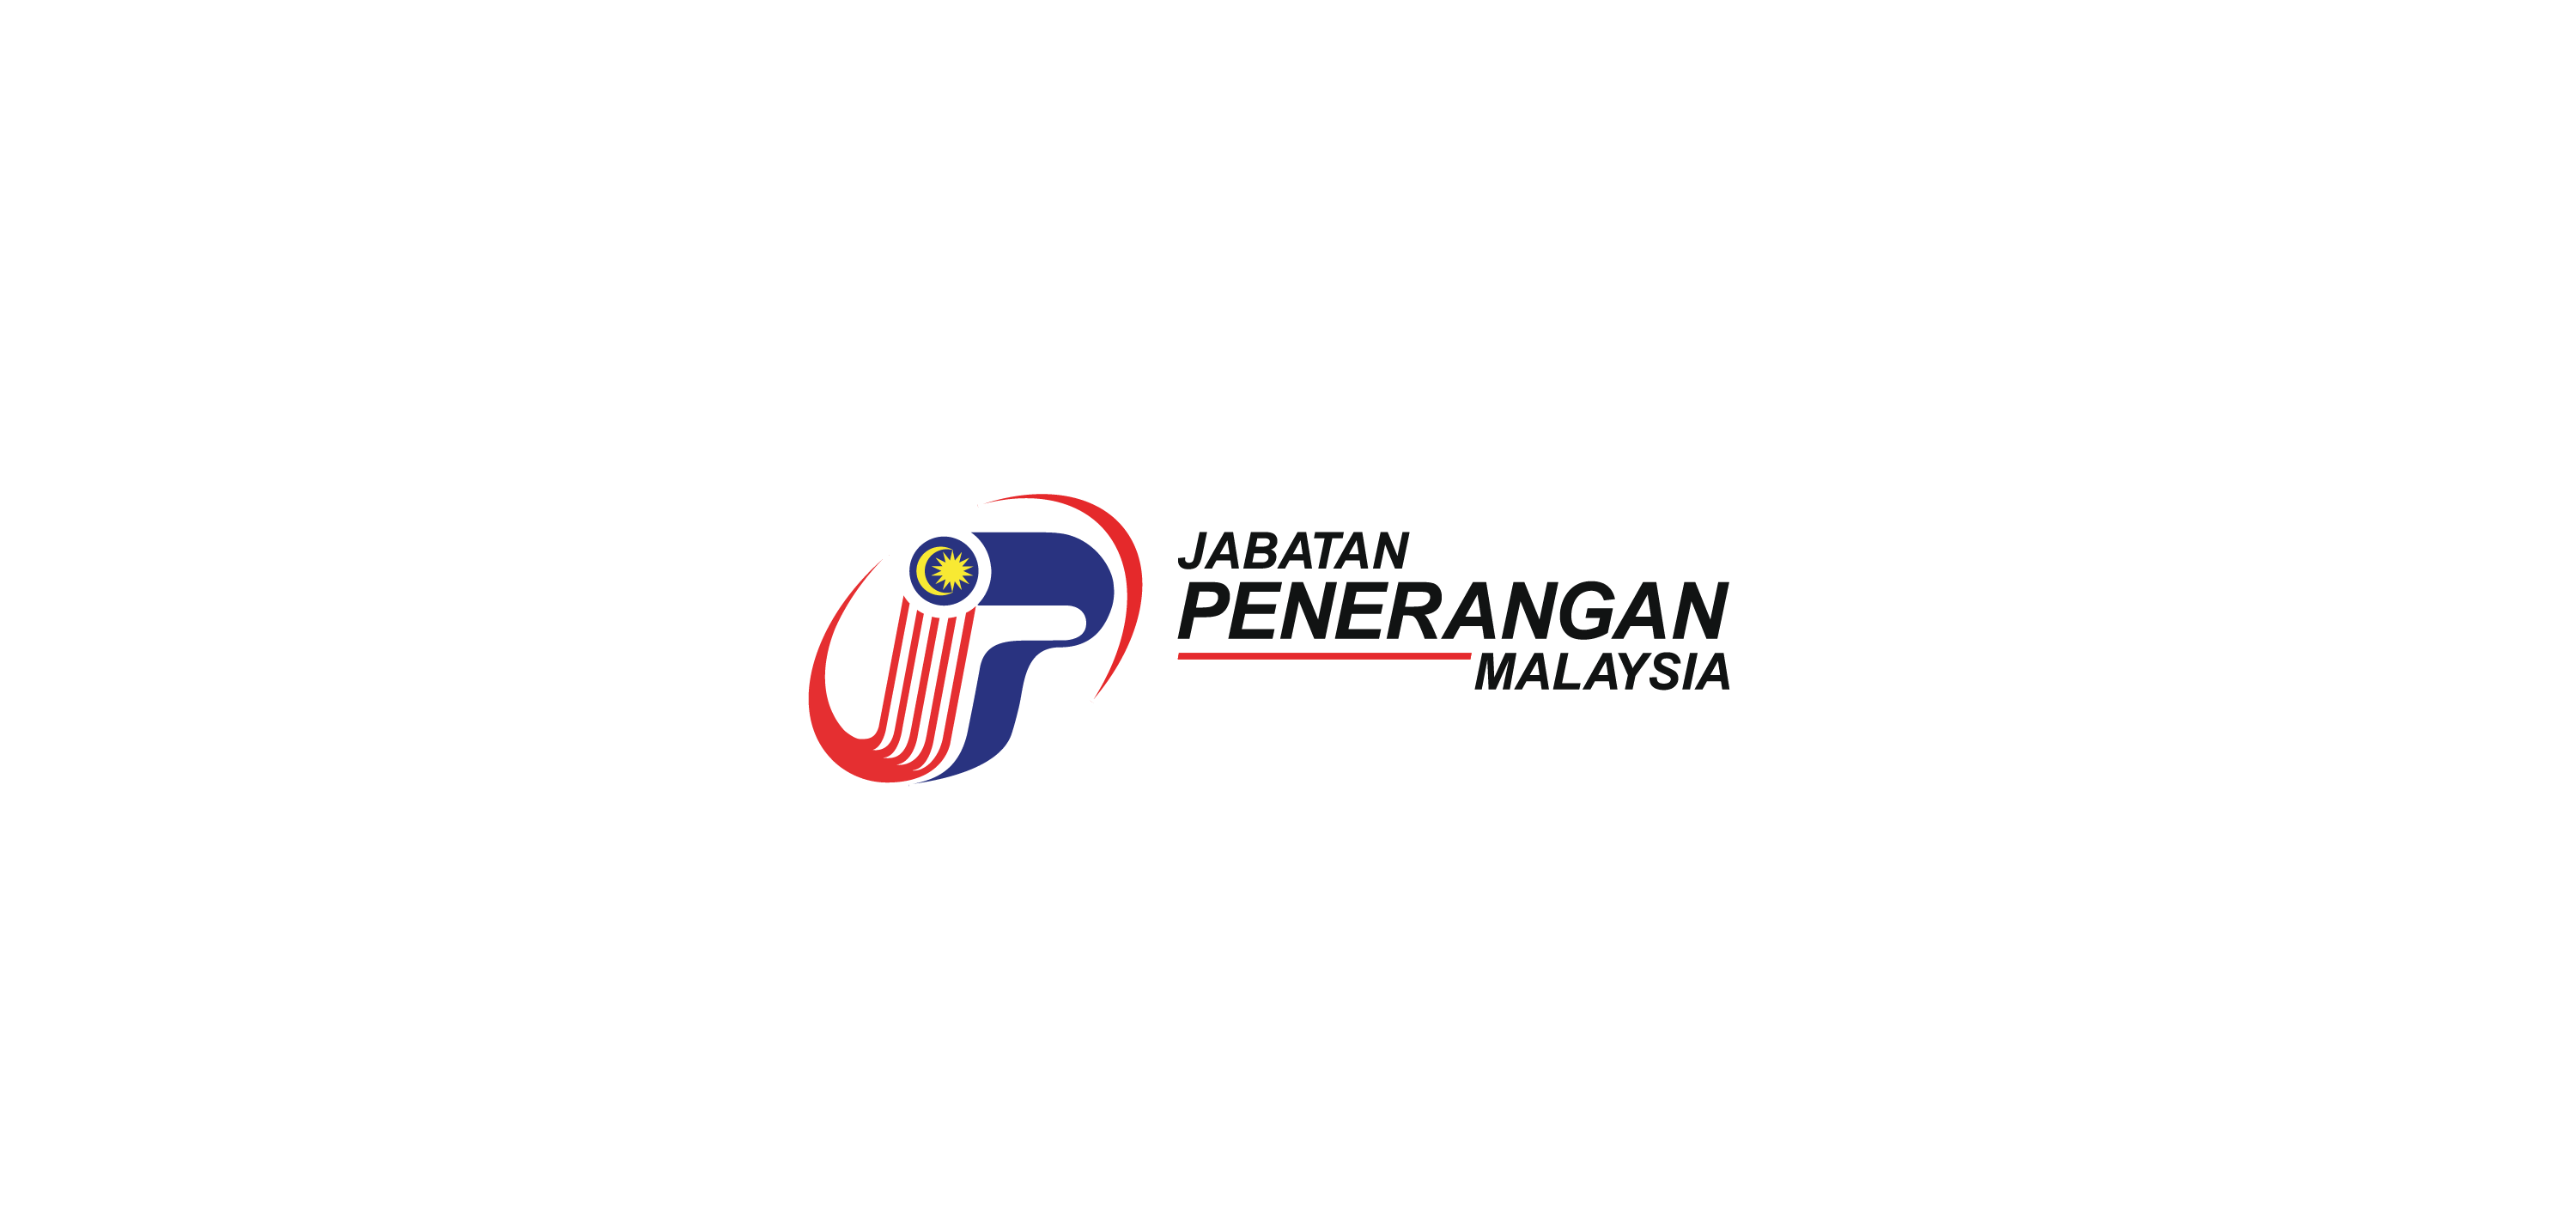 jabatan penerangan malaysia Logo